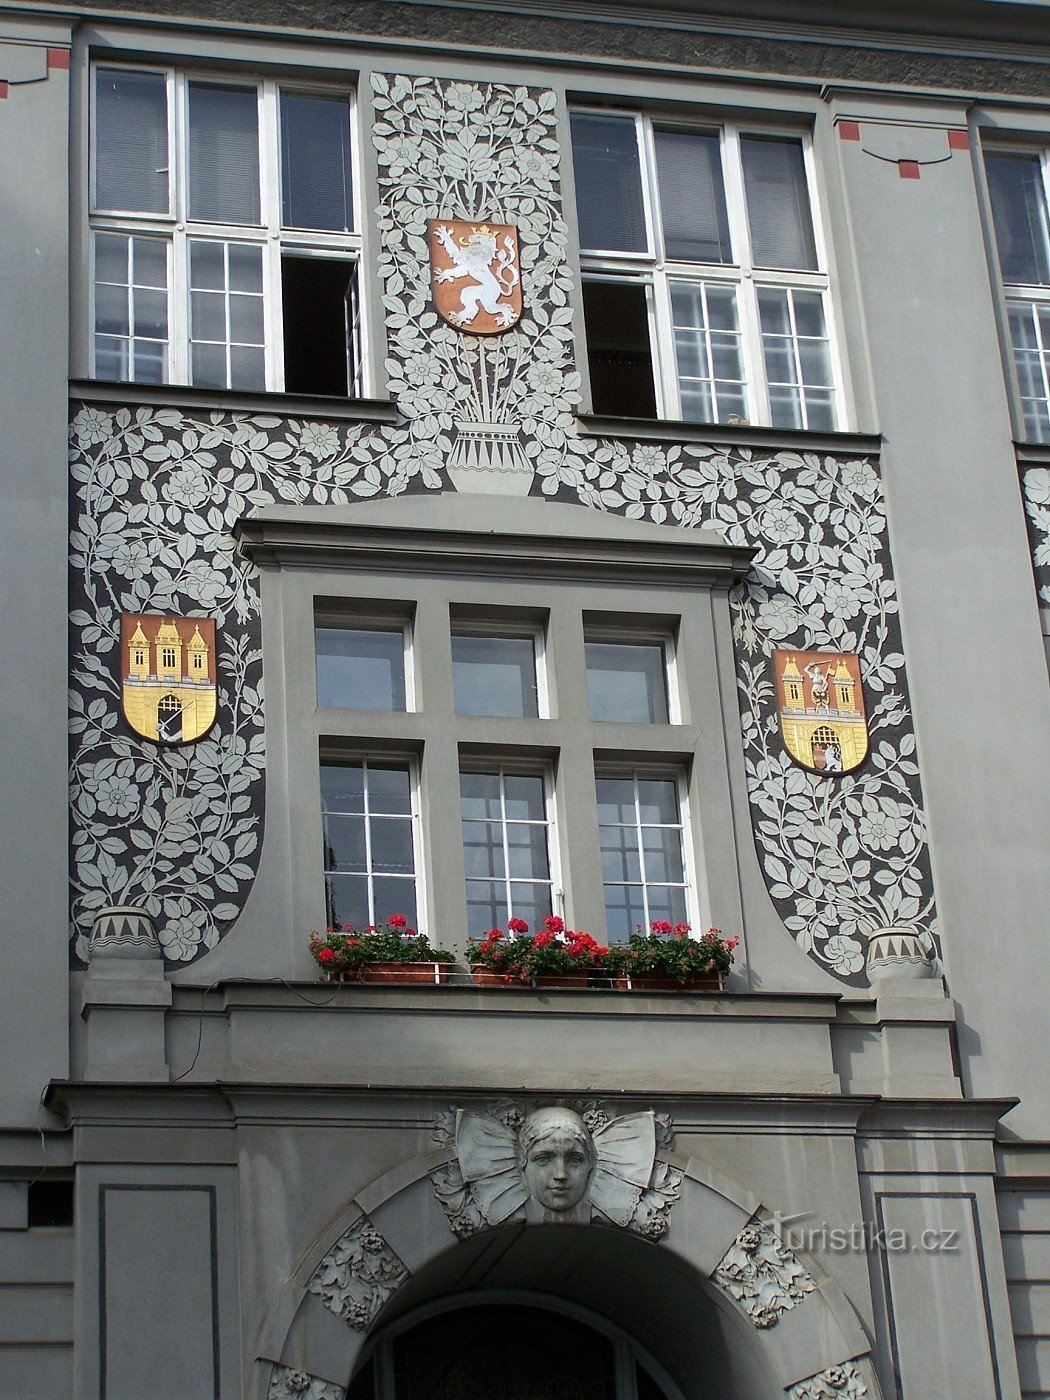 Praga - Vojtěžská 13 - Stavba secesijske šole